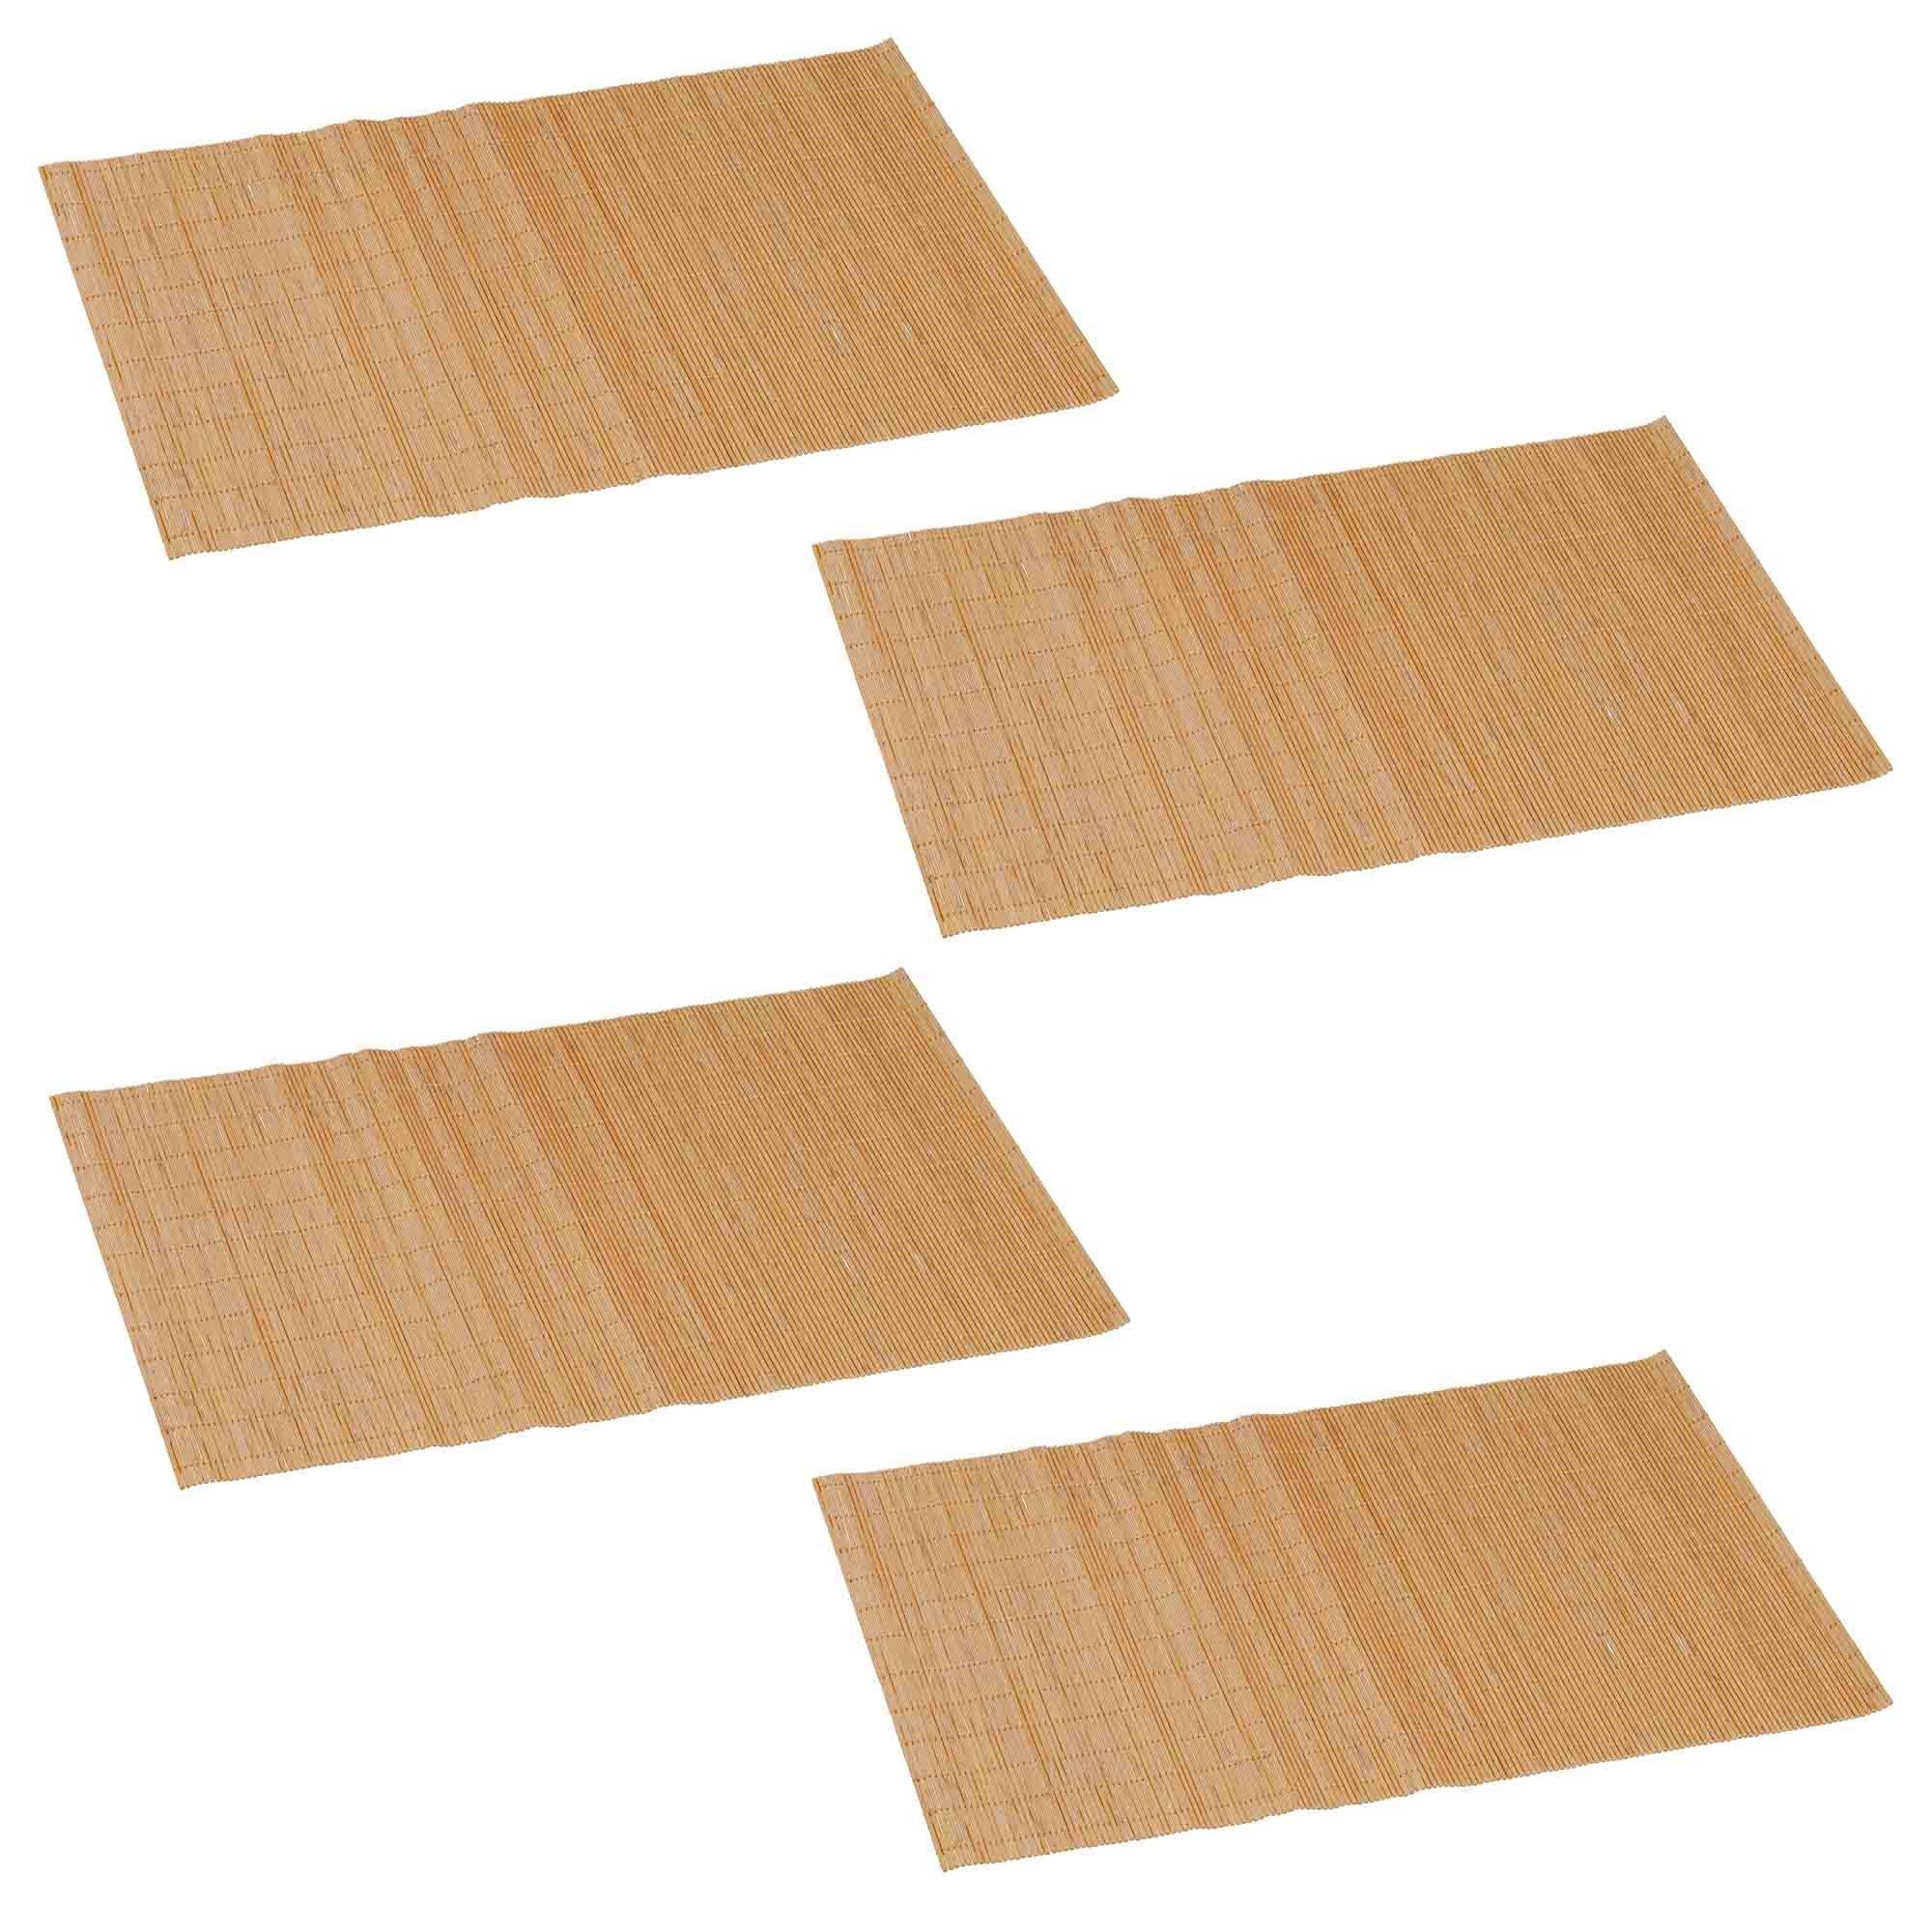 Platzset, Bambus Platzmatten Столовые наборы Unterlage Platzdecken Tischmatten Tischunterlage, HAC24, (4 Stück), 45 x 30 cm